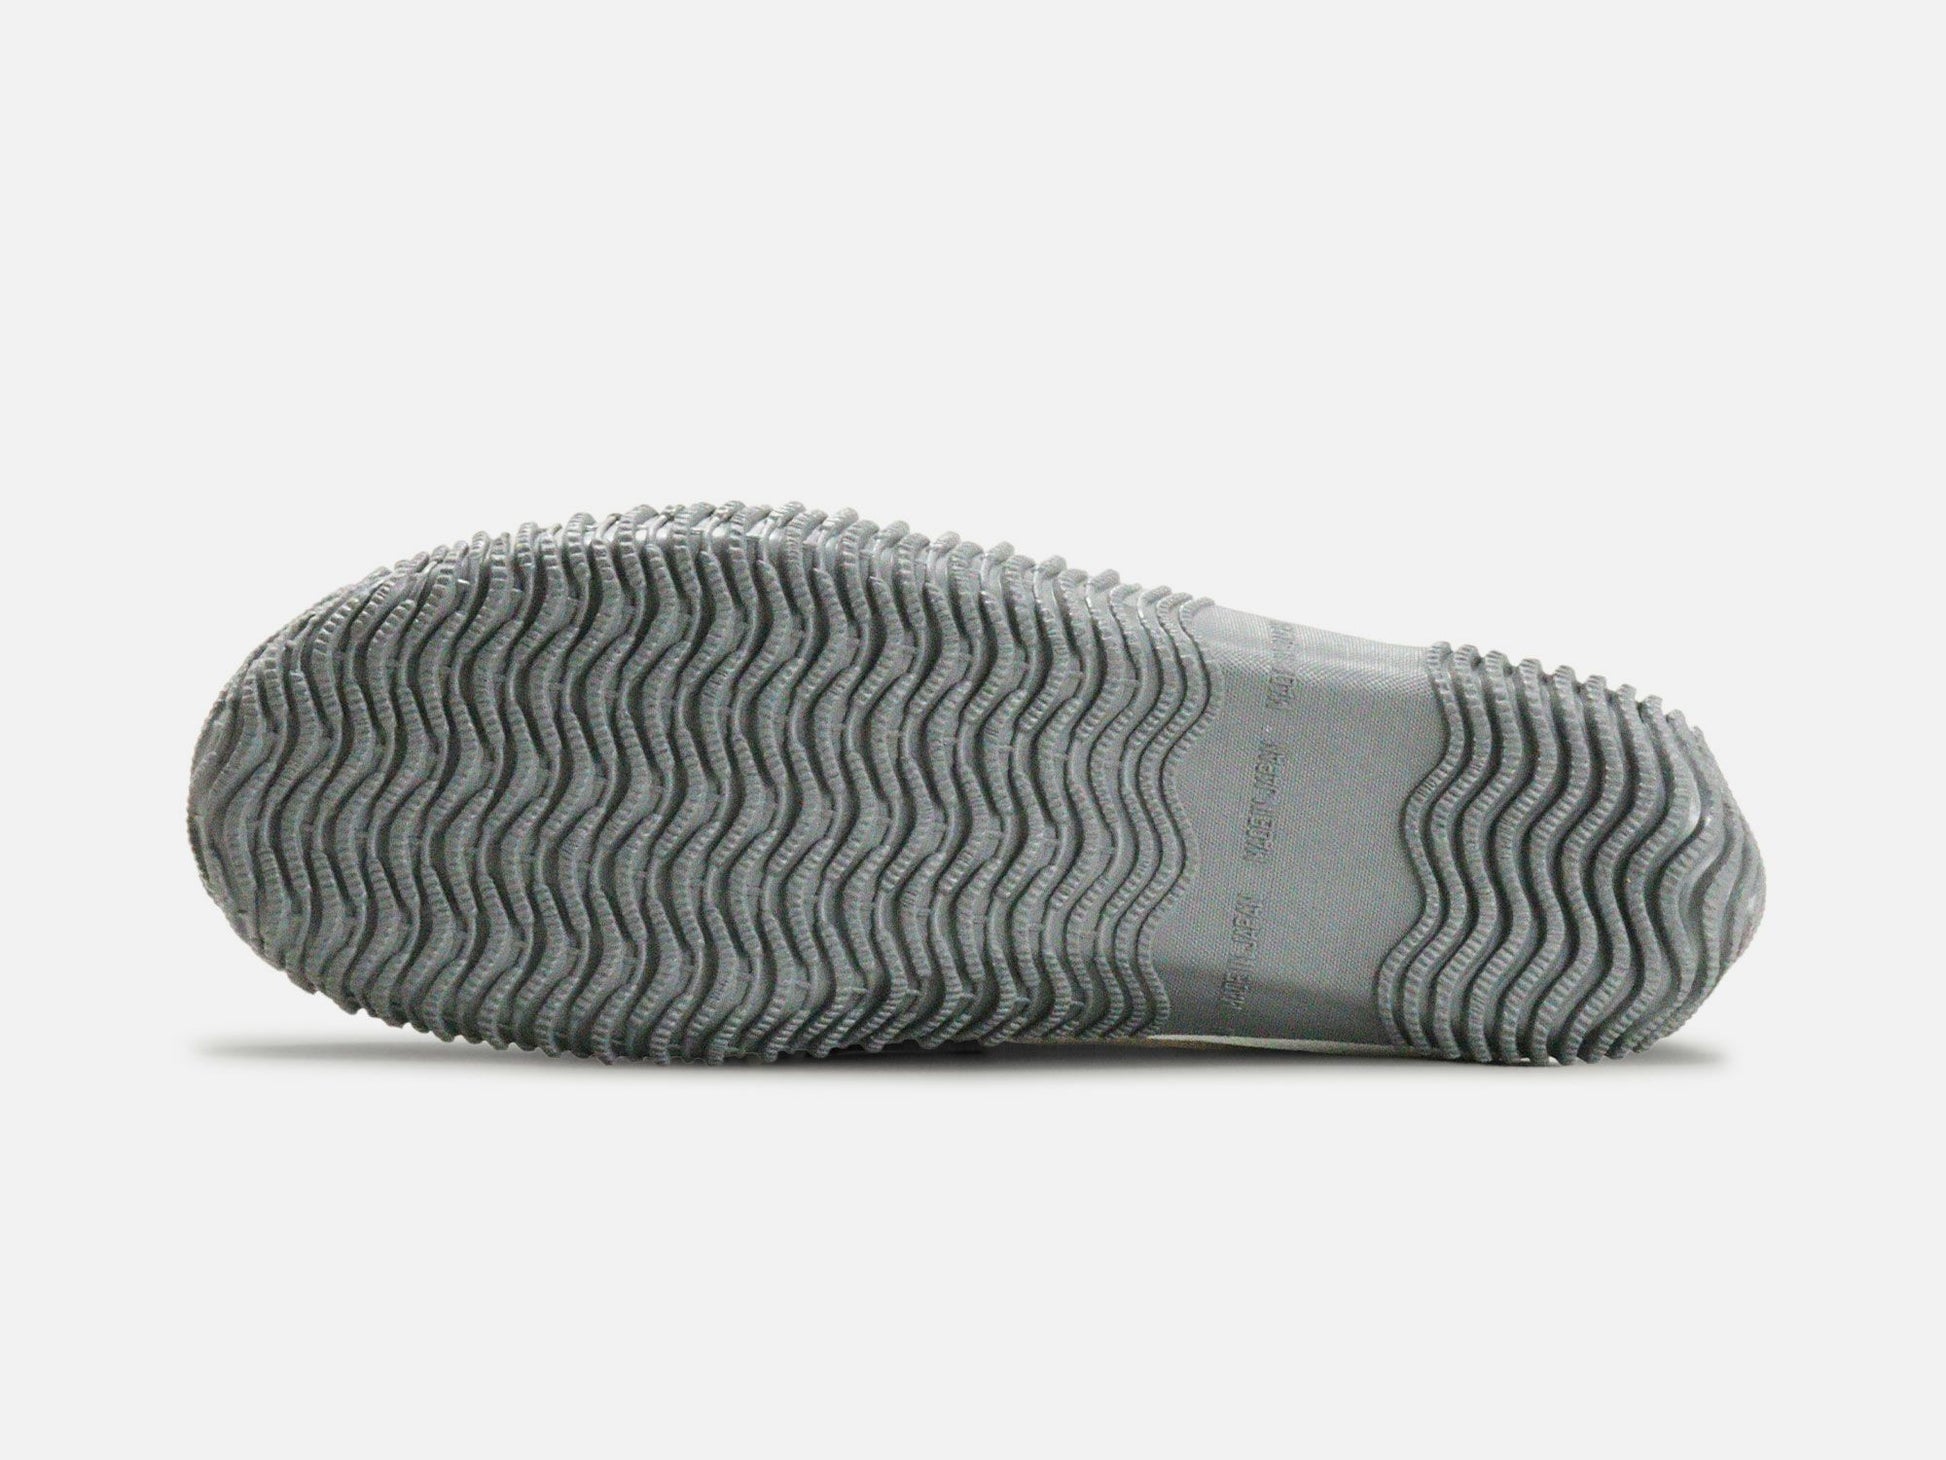 SPINGLE MOVEのスニーカー「SPM-618 Navy」の靴底の商品画像